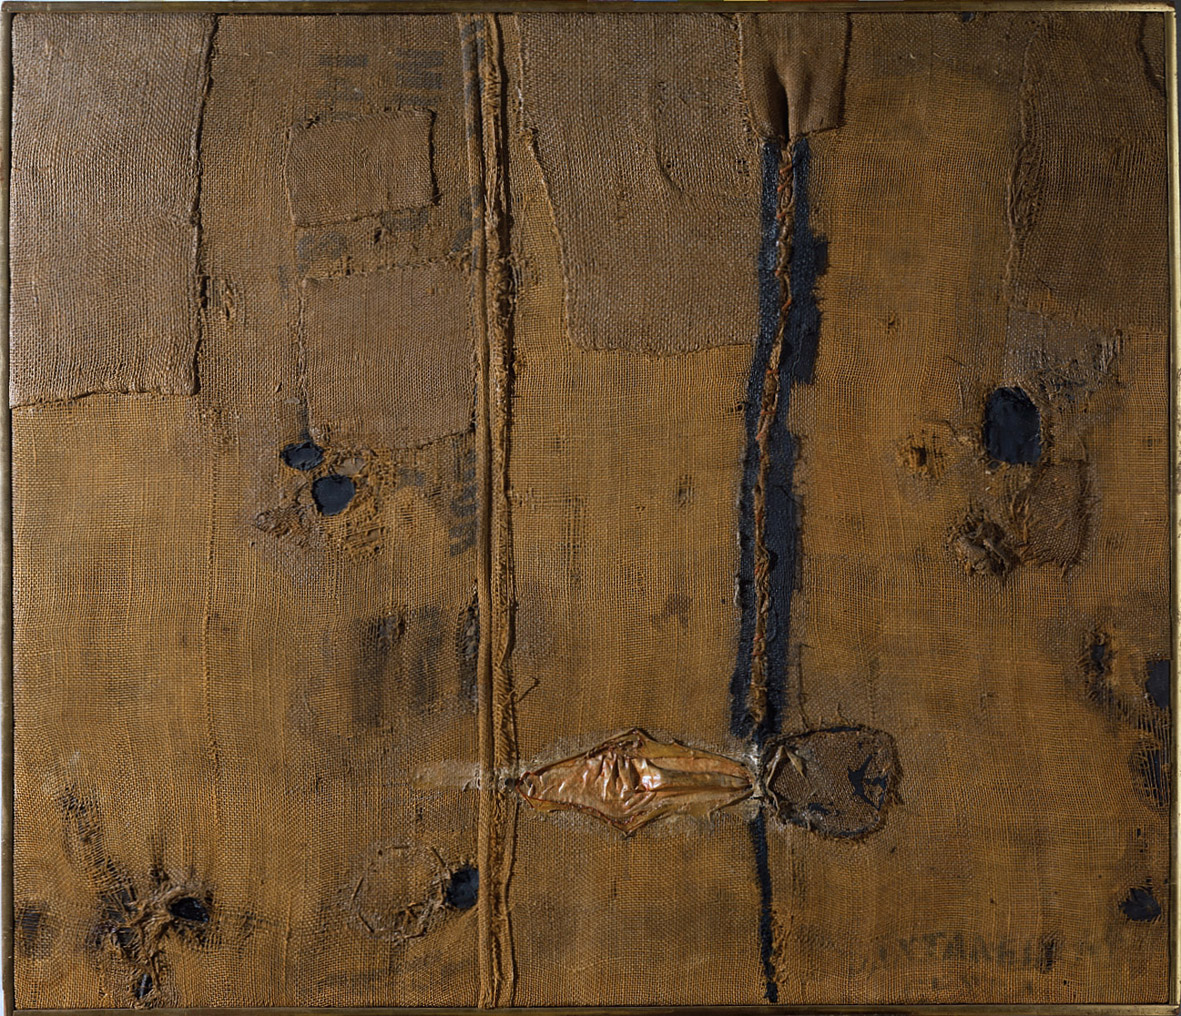 Alberto Burri, Abstraction with brown burlap (Sacco) (1953; olio, vernici, applicazioni in seta su iuta, 85,7 x 100 cm; Torino, GAM - Galleria Civica d'Arte Moderna e Contemporanea)
 